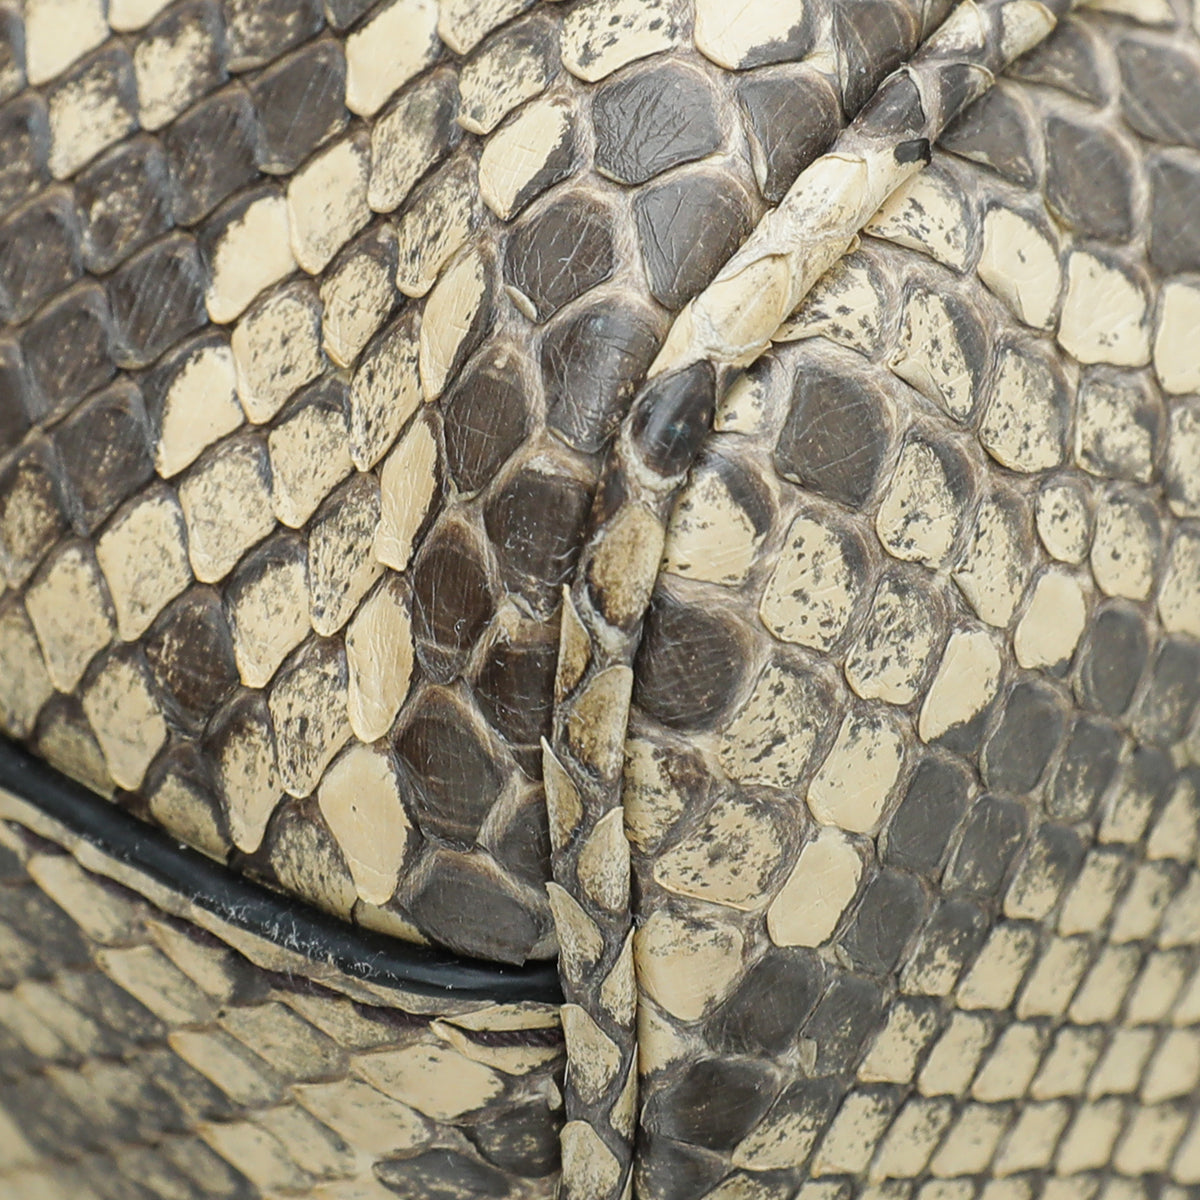 Gucci Bicolor Python Re(Belle) Top Handle Medium Bag